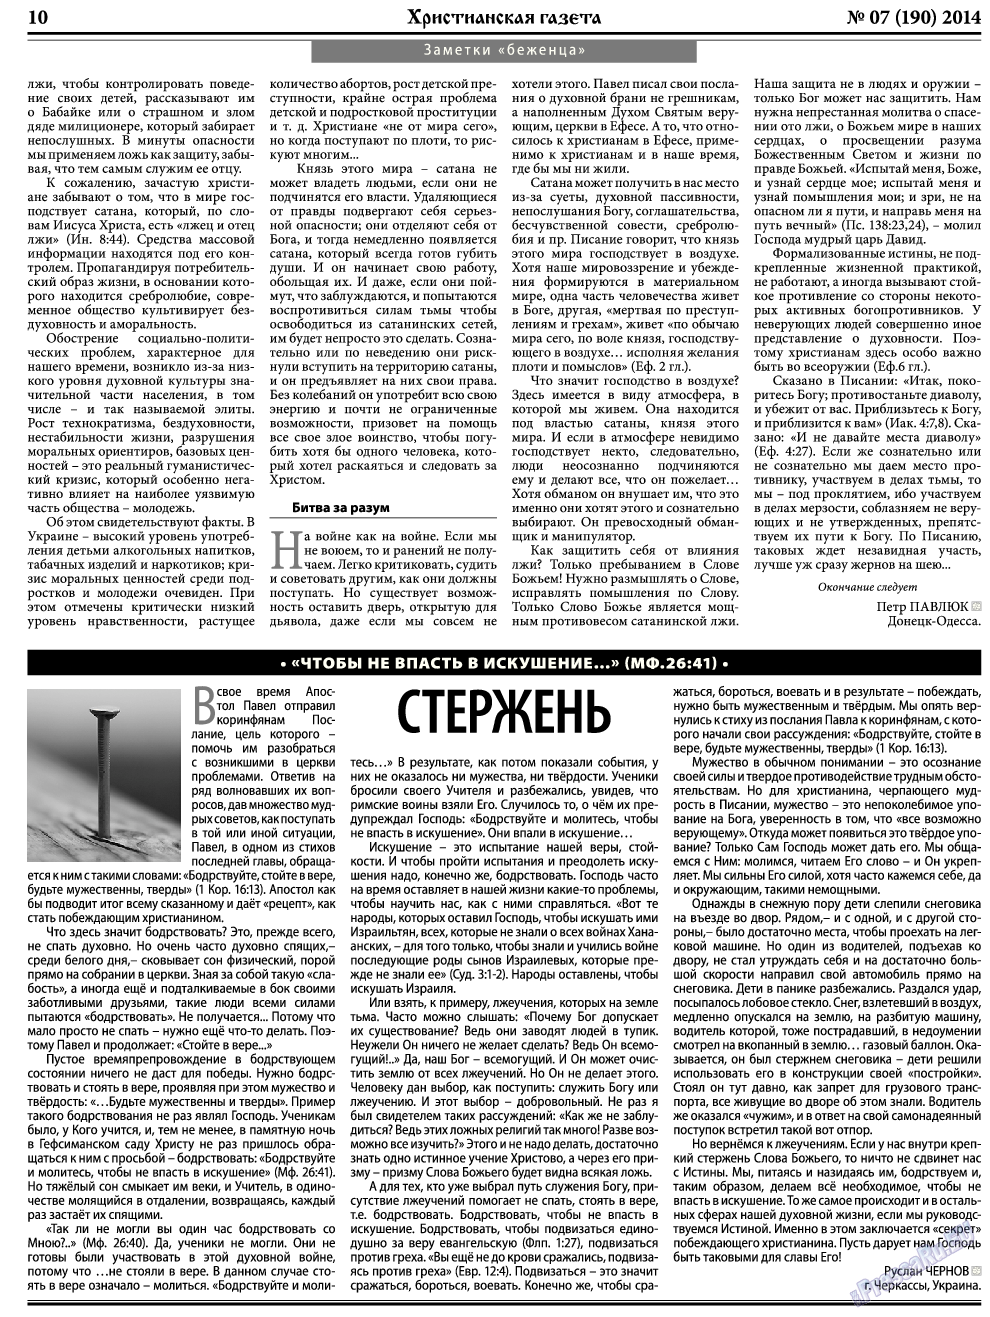 Христианская газета, газета. 2014 №7 стр.10